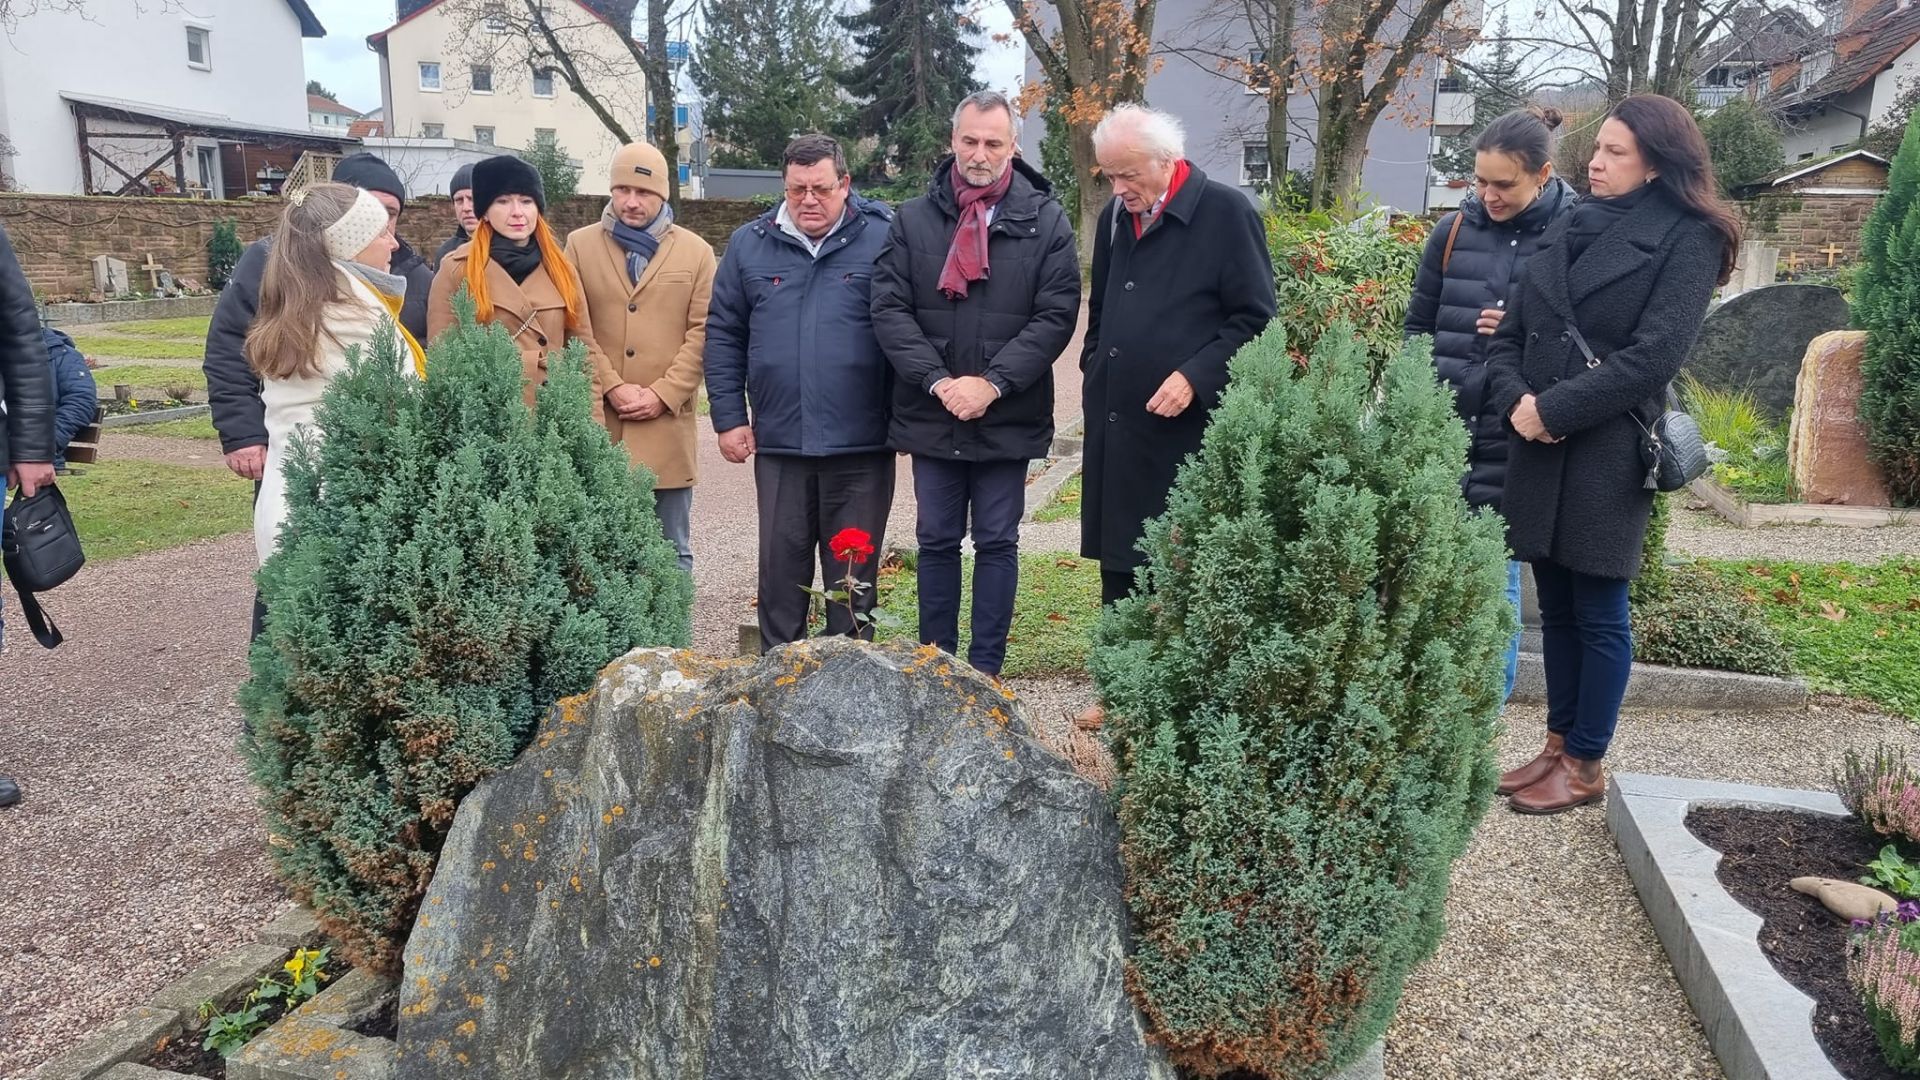 Złożenie wiązanki na grobie prof. Rynskiego - pioniera współpracy międzynarodowej pomiędzy Bieruniem a Gundelfingen. 